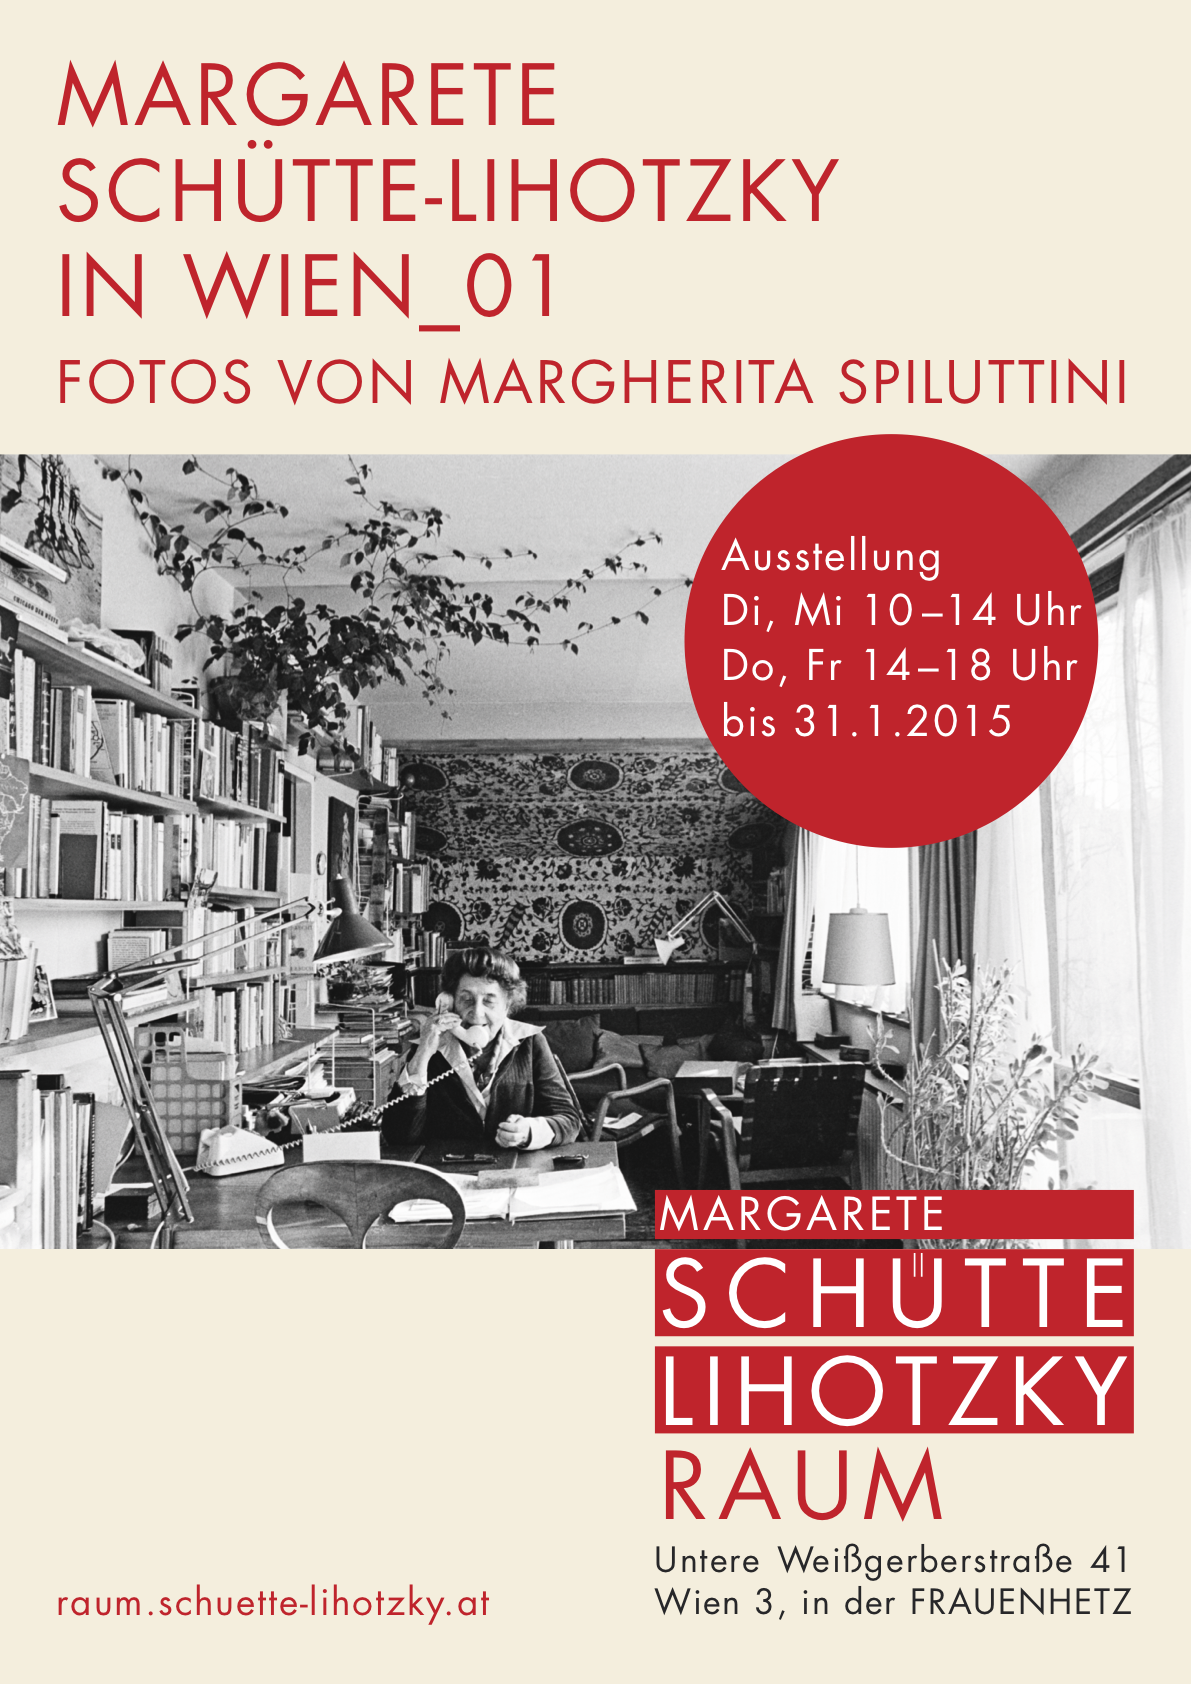 Plakat zur 1. Ausstellung im MSL Raum, 2.10.2014 - 31.1.2015. Grafik-Design: Maria-Anna Friedl